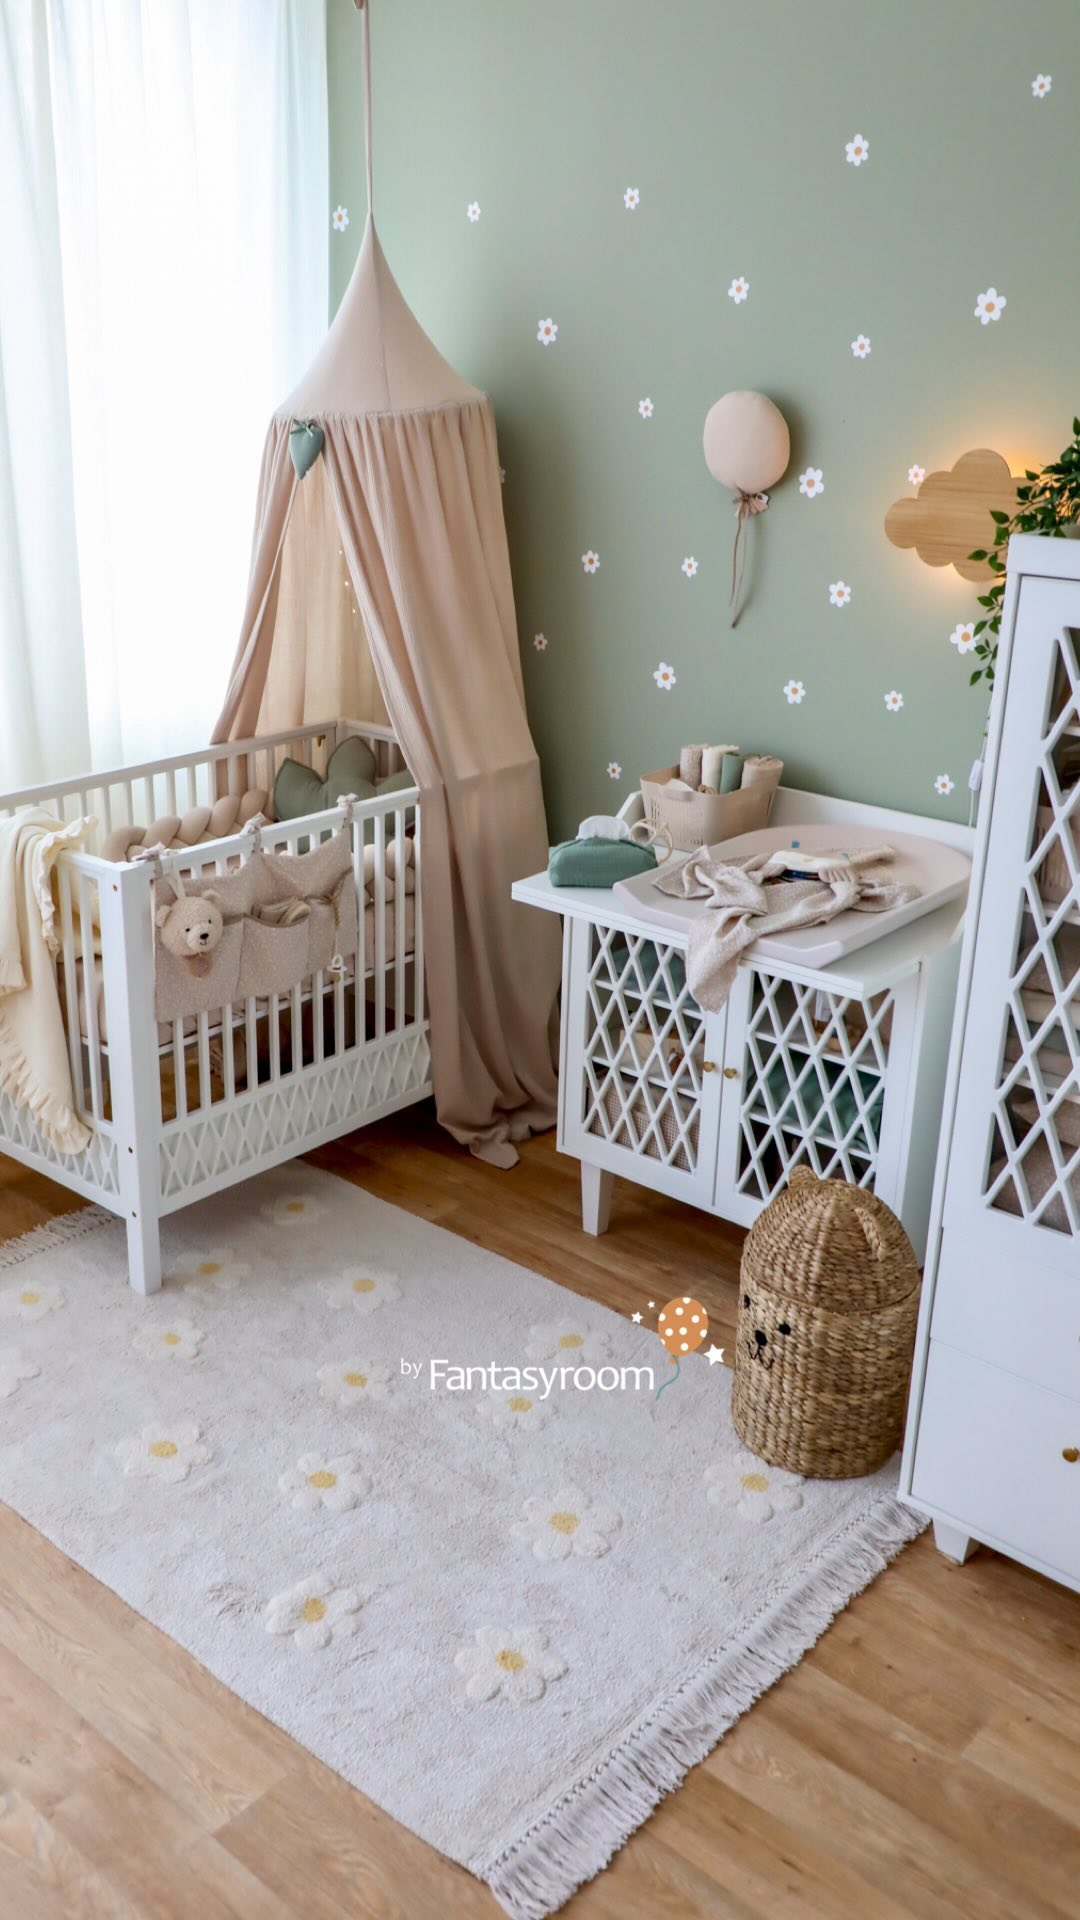 Schritt für Schritt zum gemütlichen Babyzimmer 🤍🌿🕊️ Wie gefällt es euch? Wir freuen uns auf euer Feedback! 🤩

Diese und viele weitere Kinderzimmer Ideen haben wir im Shop für euch!
𝘄𝘄𝘄.𝗺𝘆-𝗳𝗮𝗻𝘁𝗮𝘀𝘆𝗿𝗼𝗼𝗺.𝗱𝗲
.
.
.
#myfantasyroom #fantasyroomdeko #fantasyroom #babyzimmer #babyzimmerdeko #babyzimmerinspiration #babyzimmerideen #babyroom #babyroomdecor #babyroomideas #babyroominspo #nursery #nurserydecor #nurseryinspo #babynursery #babyrooms #camcamcph #babymöbel #babybett #dinkiballoon #bohonursery #bohokidsroom #bohobabyroom #beige #beigenursery #beigekidsroom #kidsdecor